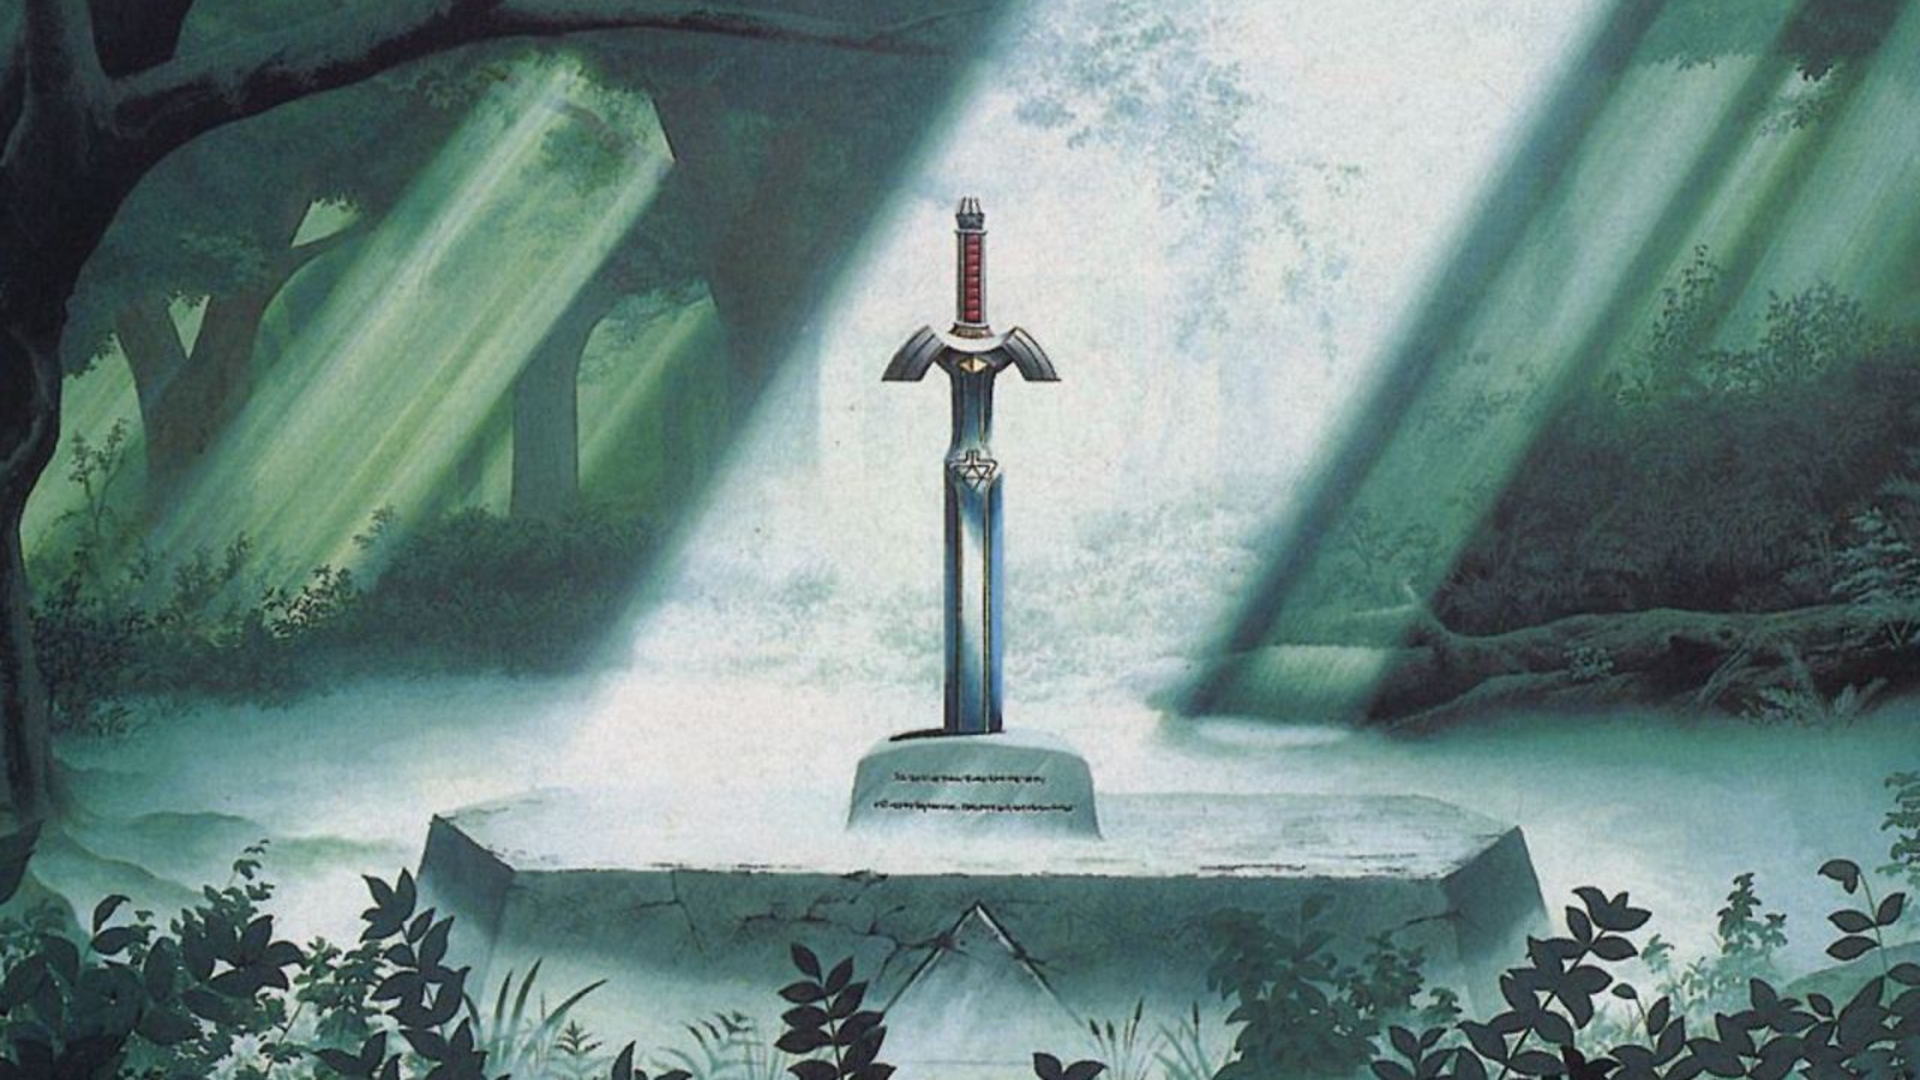 video game, the legend of zelda, master sword, zelda